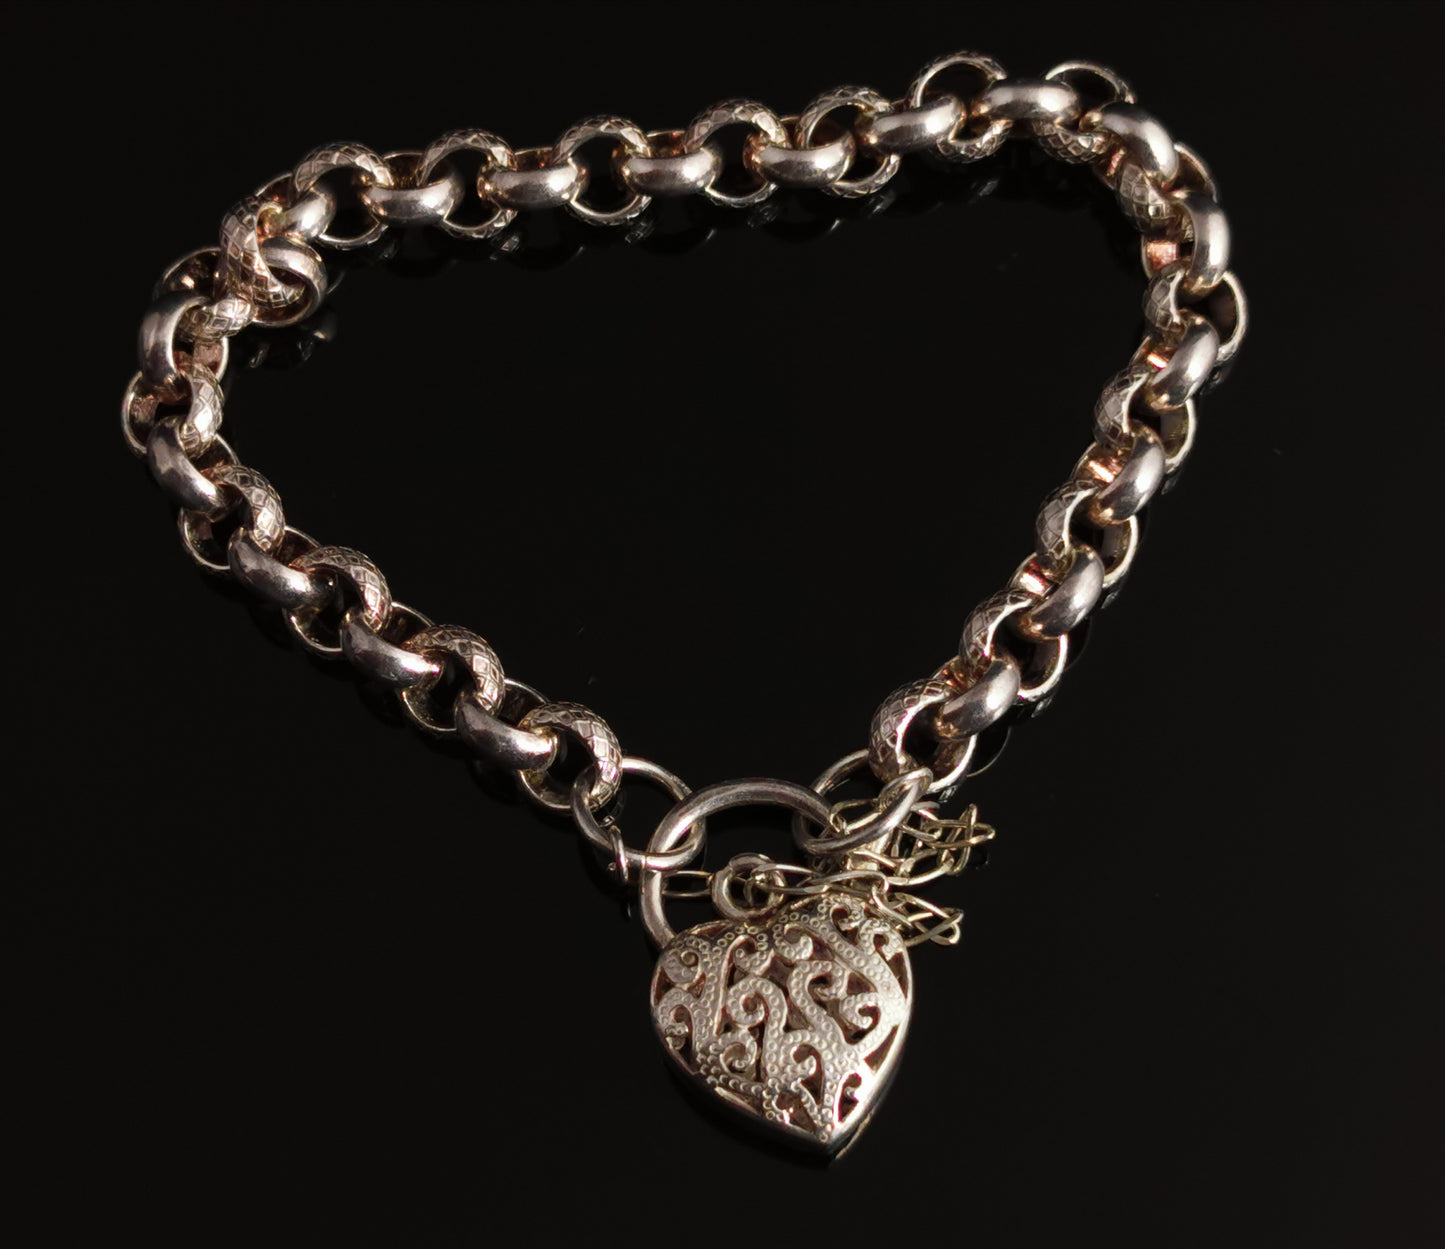 Vintage sterling silver rolo link bracelet, heart padlock